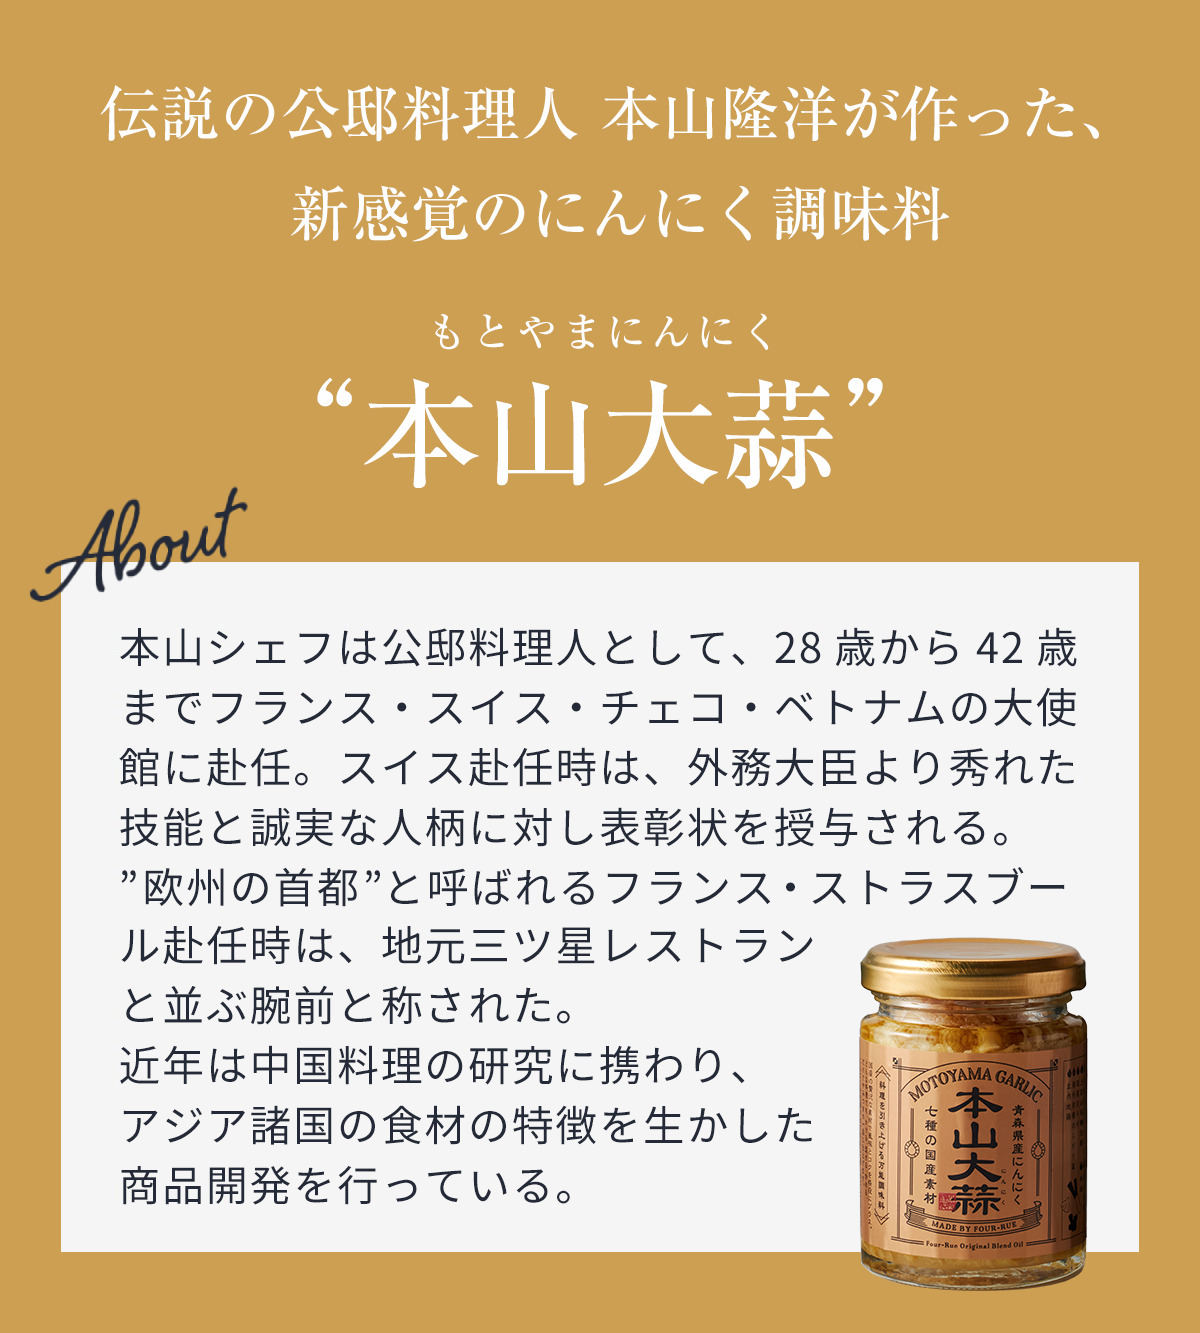 伝説の公邸料理人 本山隆洋が作った新感覚のにんにく調味料「本山大蒜」